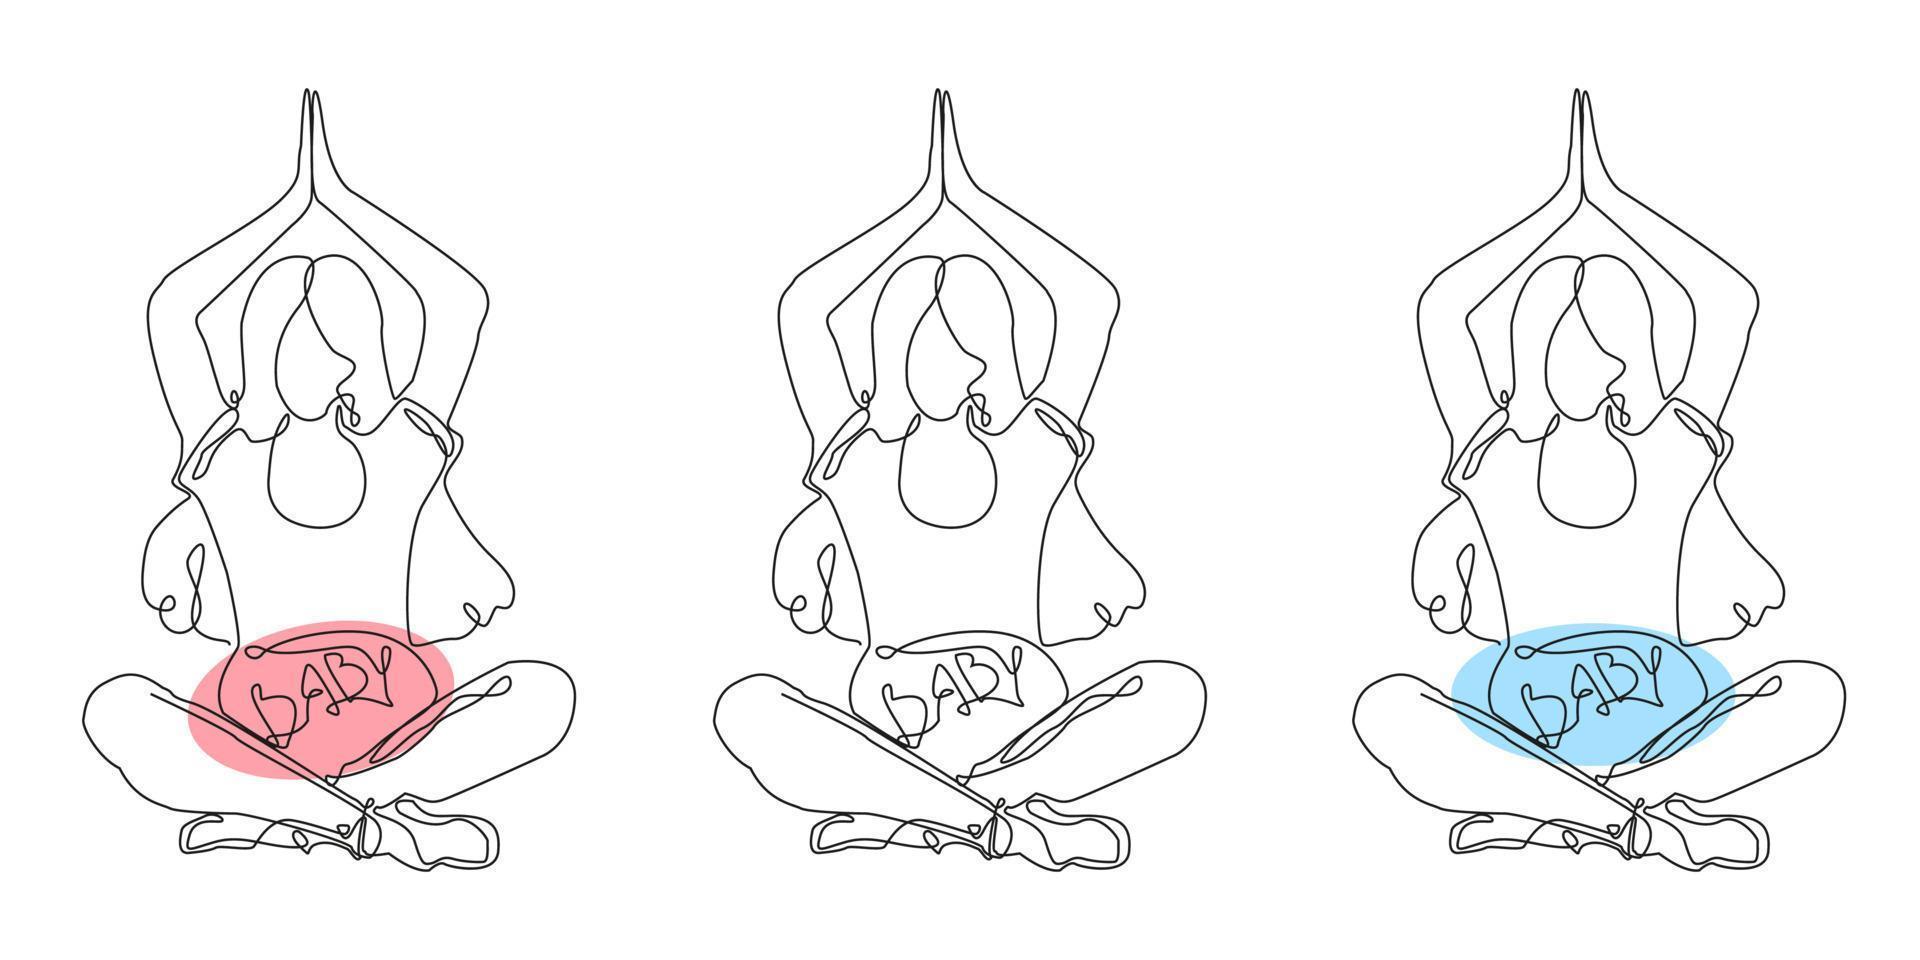 una sola línea continua de dibujo embarazada, saludable, madre, deporte, yoga, entrenamiento, gimnasia. ilustración aislada un fondo blanco. vector